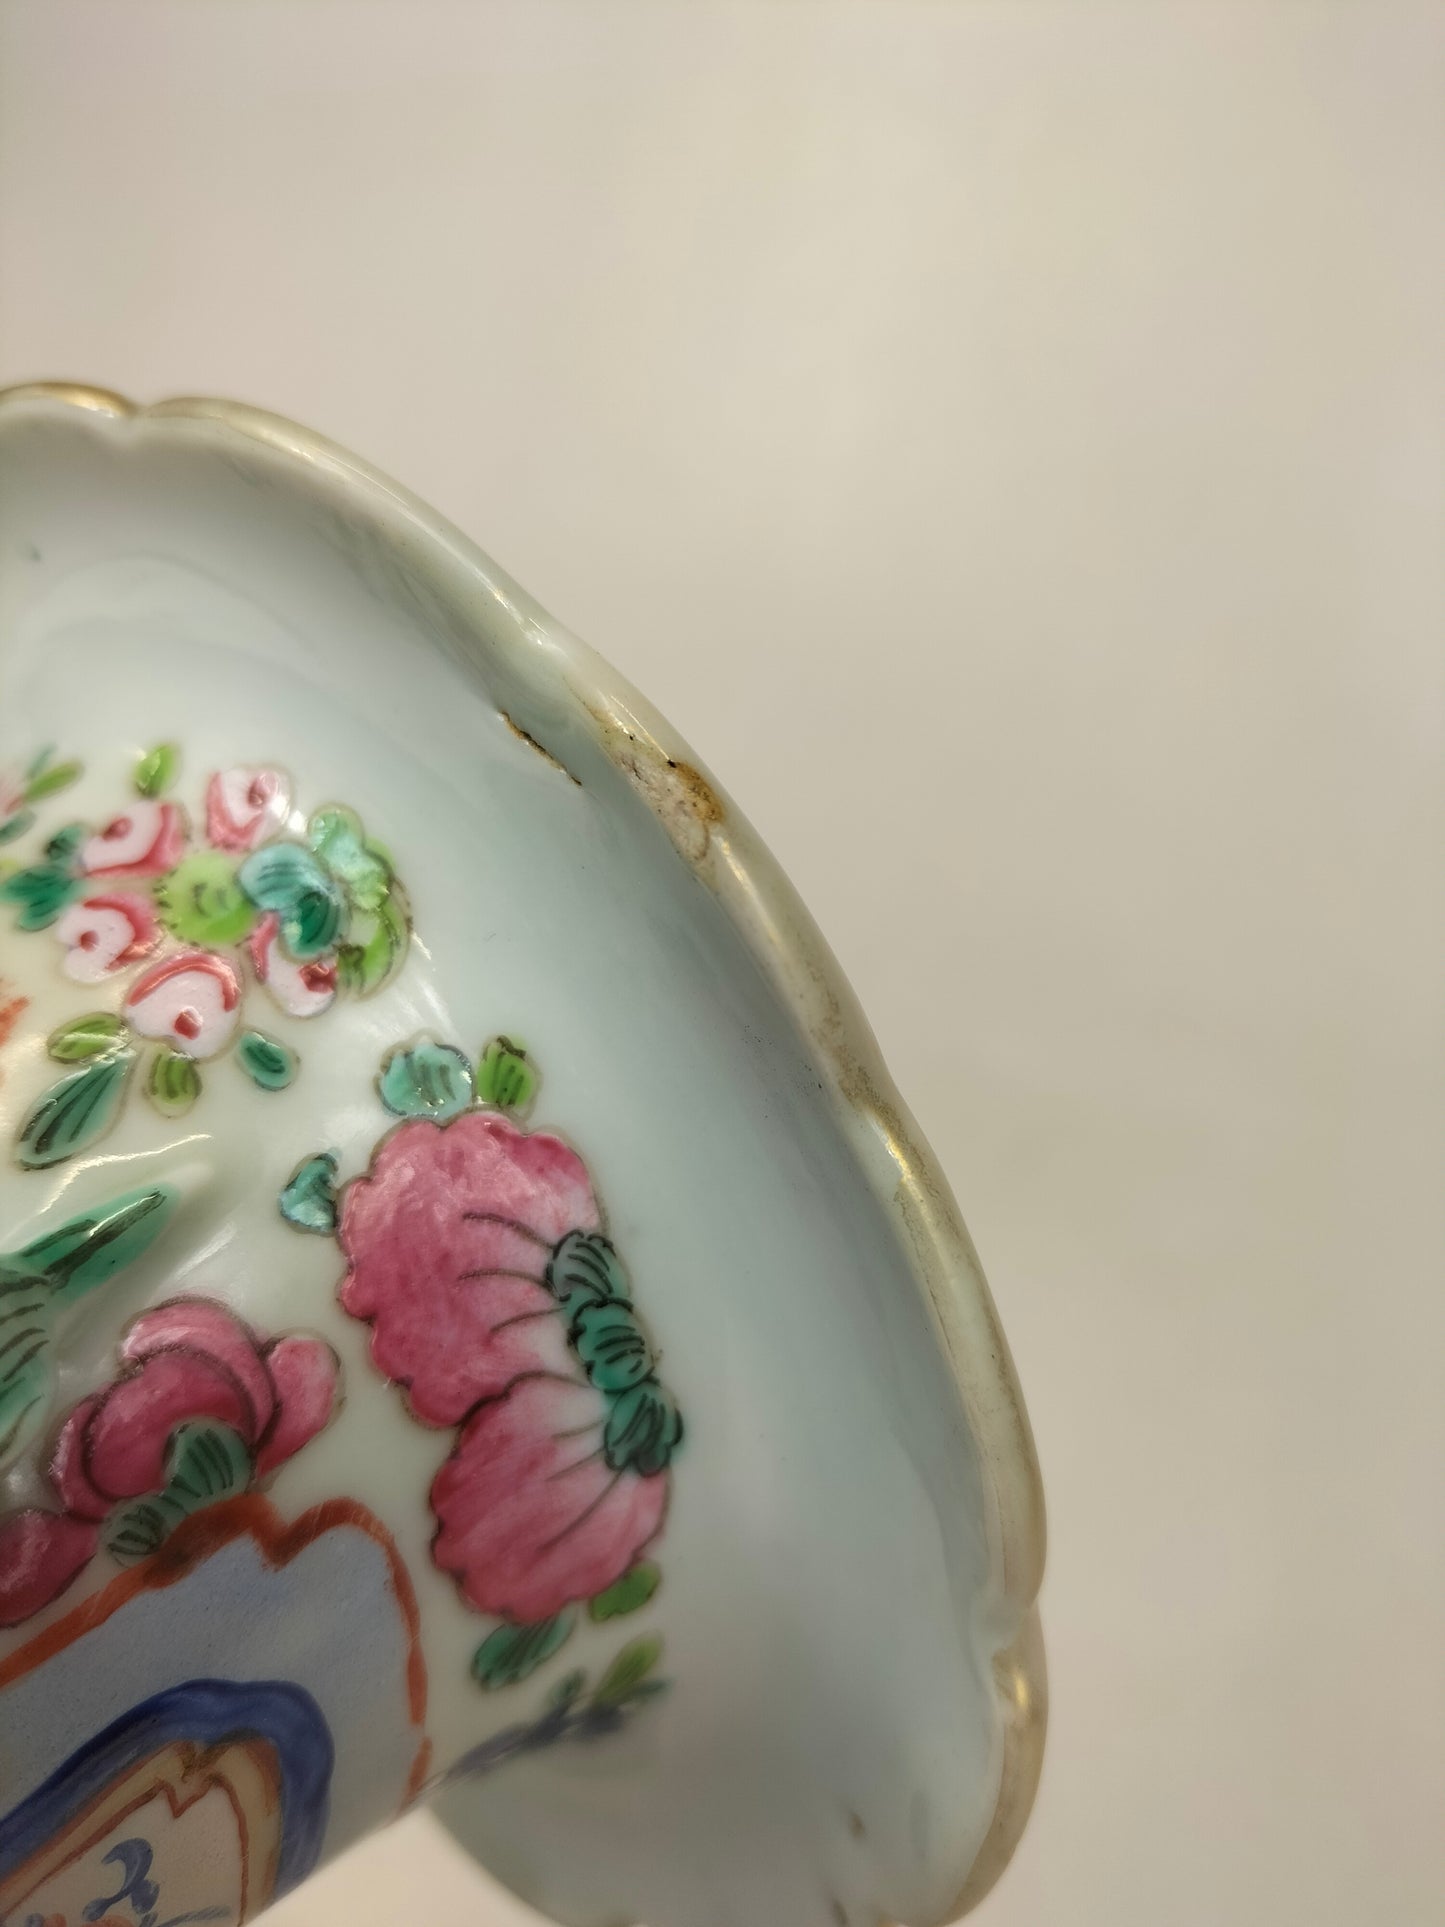 Antigo vaso de cantão chinês decorado com cena imperial // Dinastia Qing - século XIX